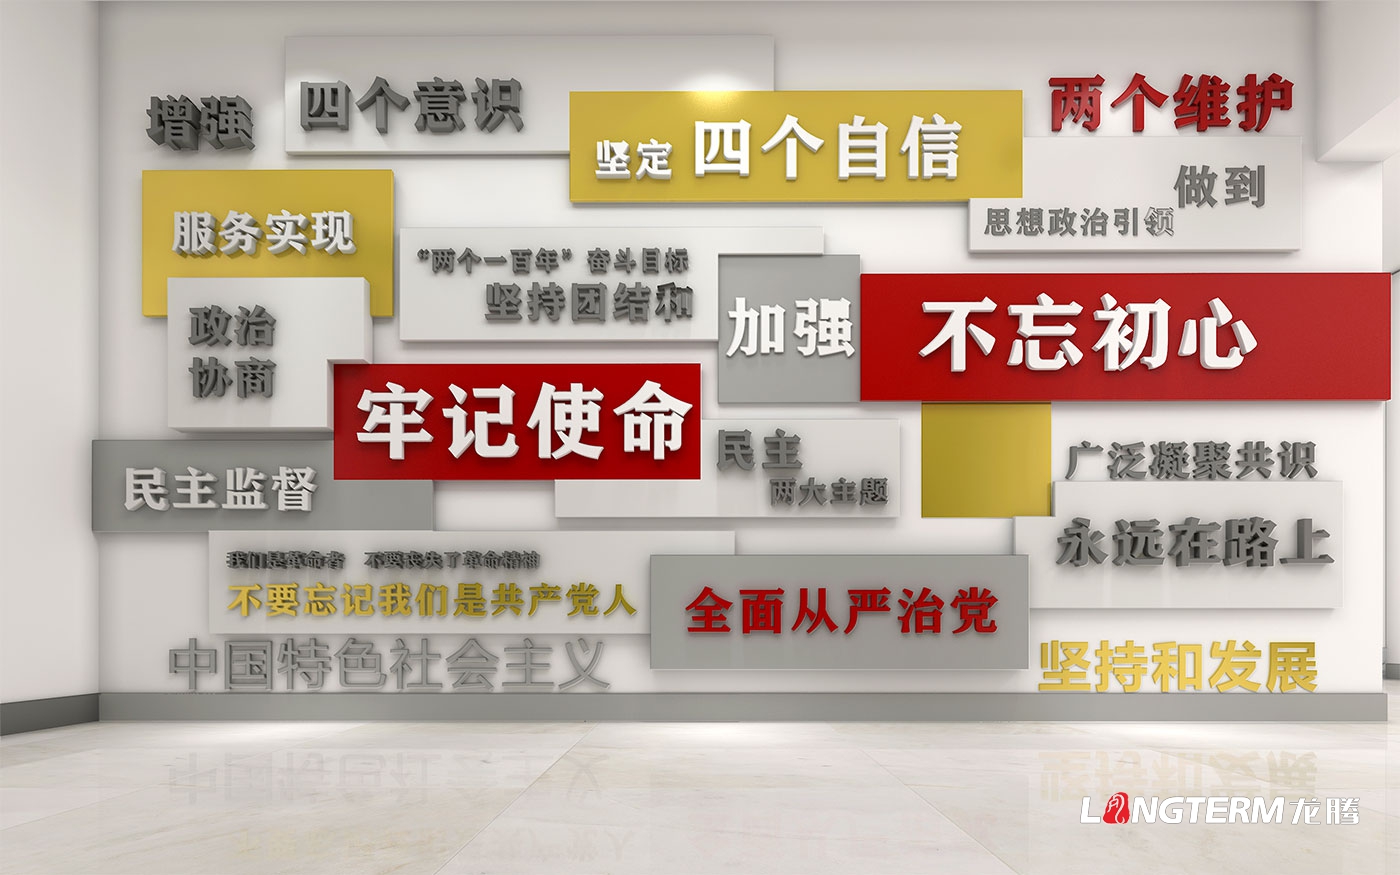 龙泉政协党建示范点设计_龙泉驿区政协党建示范阵地建设方案